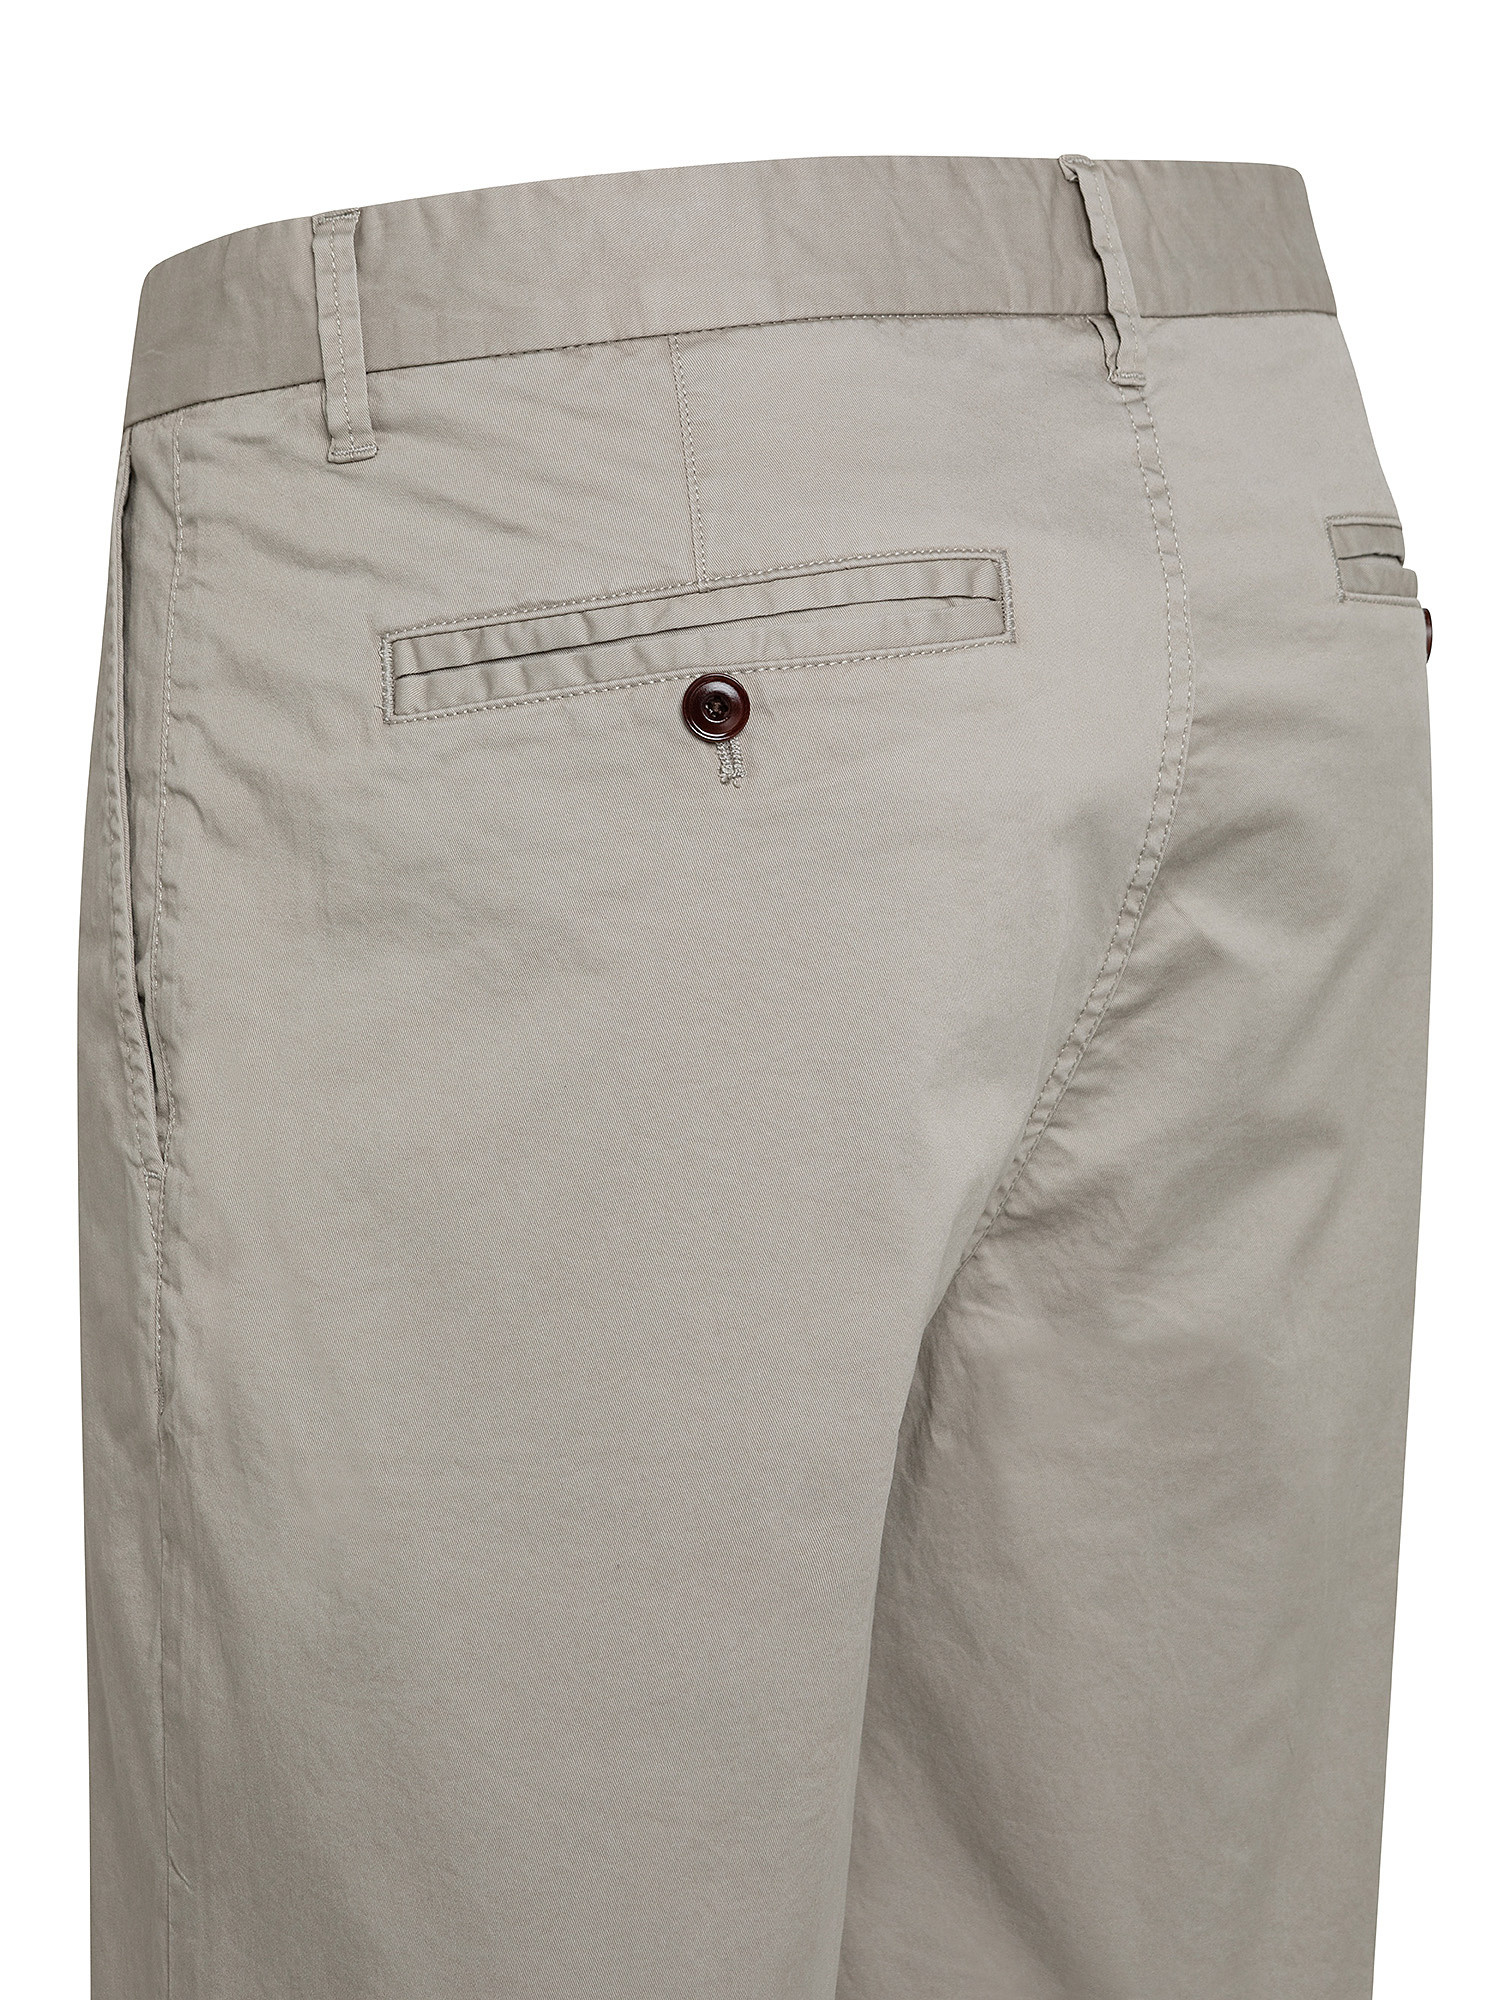 Pantaloncini chino, Grigio chiaro, large image number 2